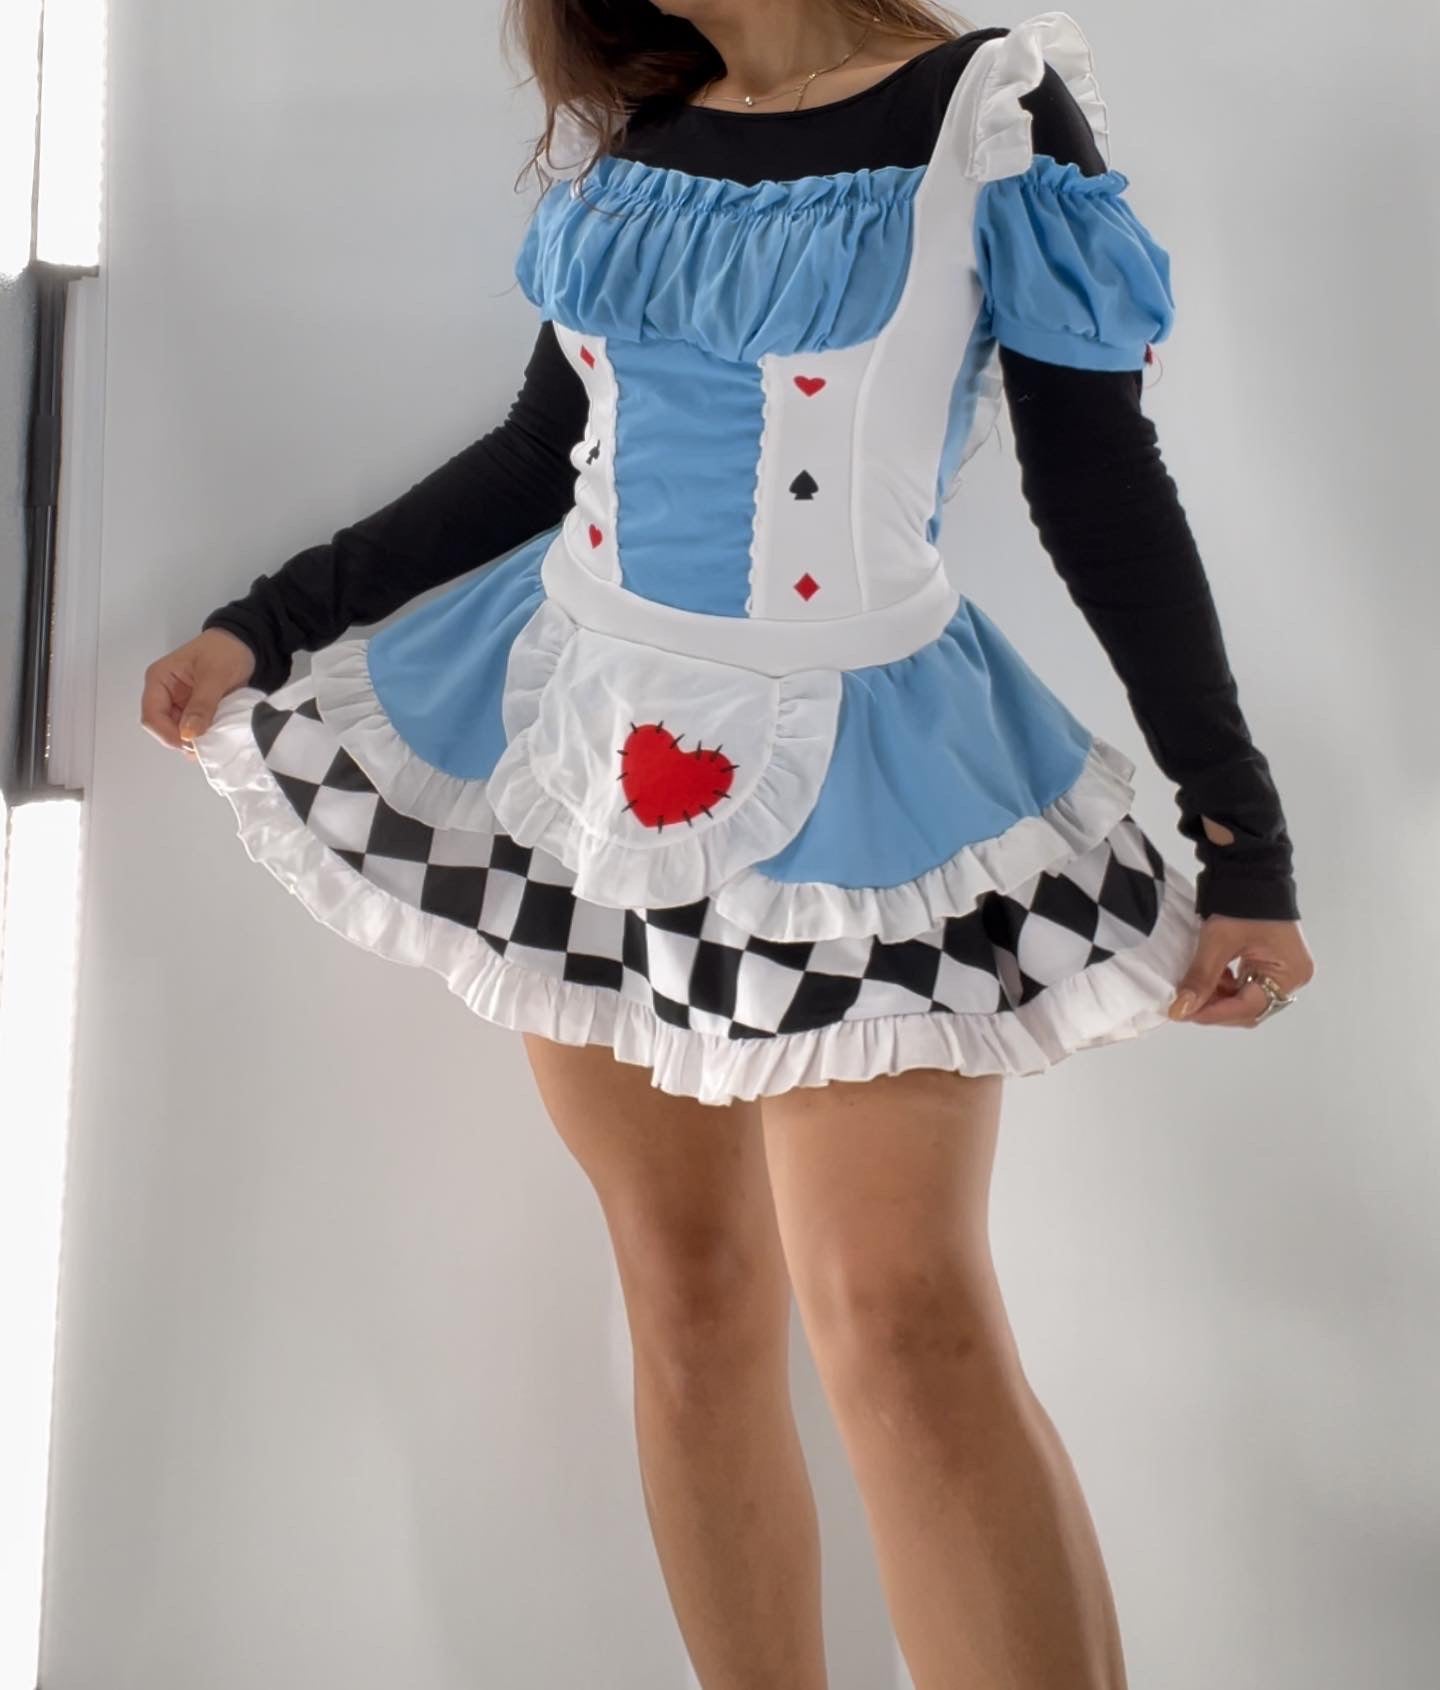 Alice in Wonderland Costume Dress (Medium)